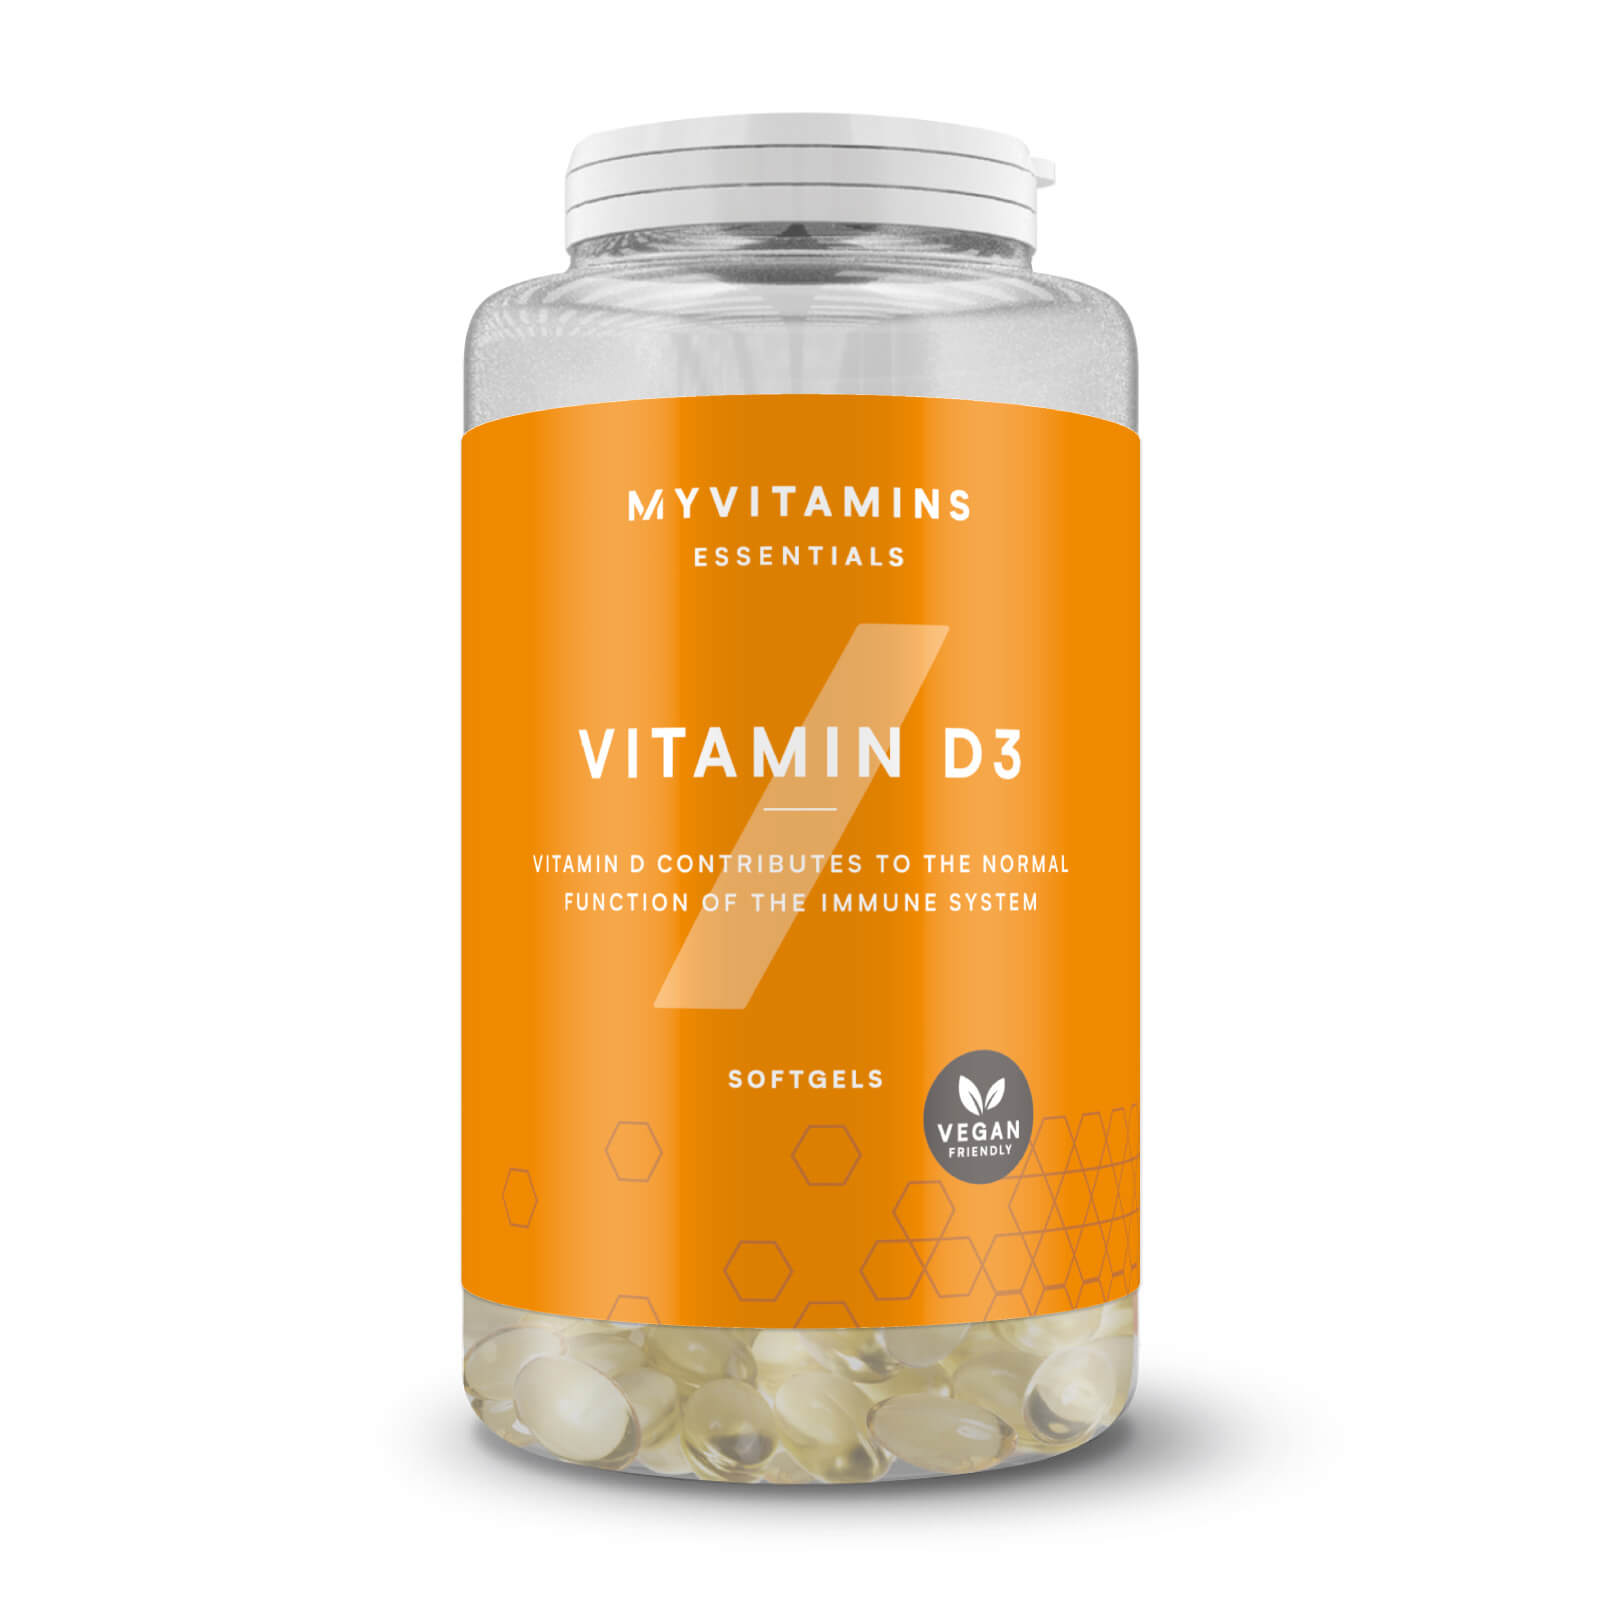 Myvitamins Vitamin D3 - 180Softgels - Vegan